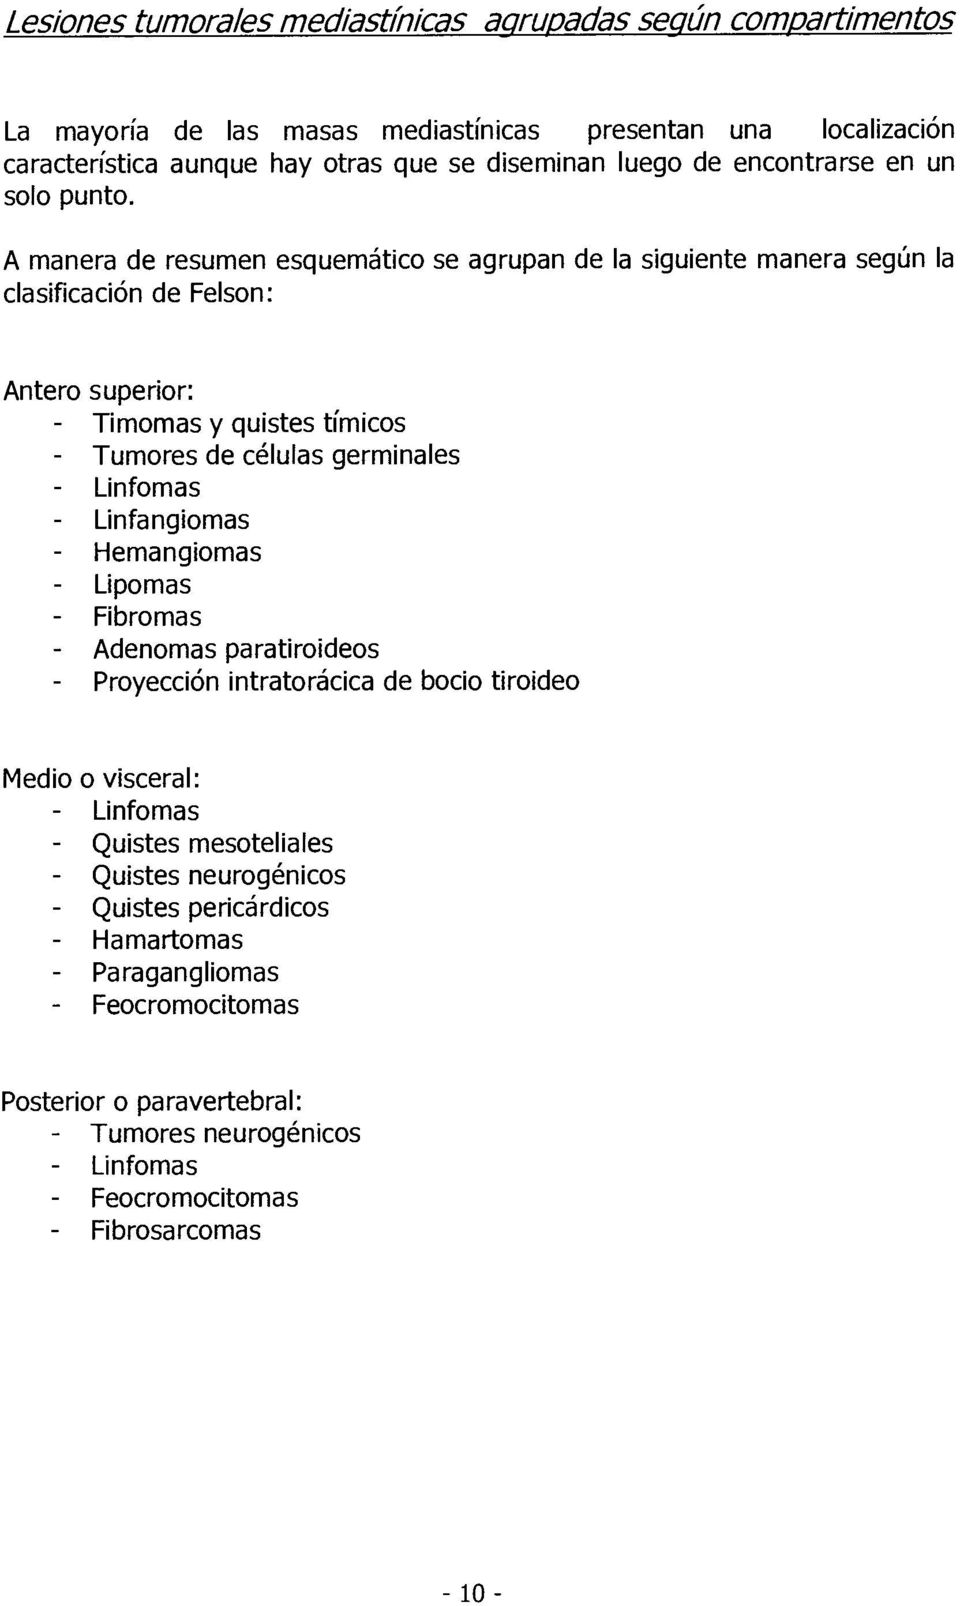 A manera de resumen esquemático se agrupan de la siguiente manera según la clasificación de Felson: Antero superior: - Timomas y quistes tímicos - Tumores de células germinales - Linfomas -